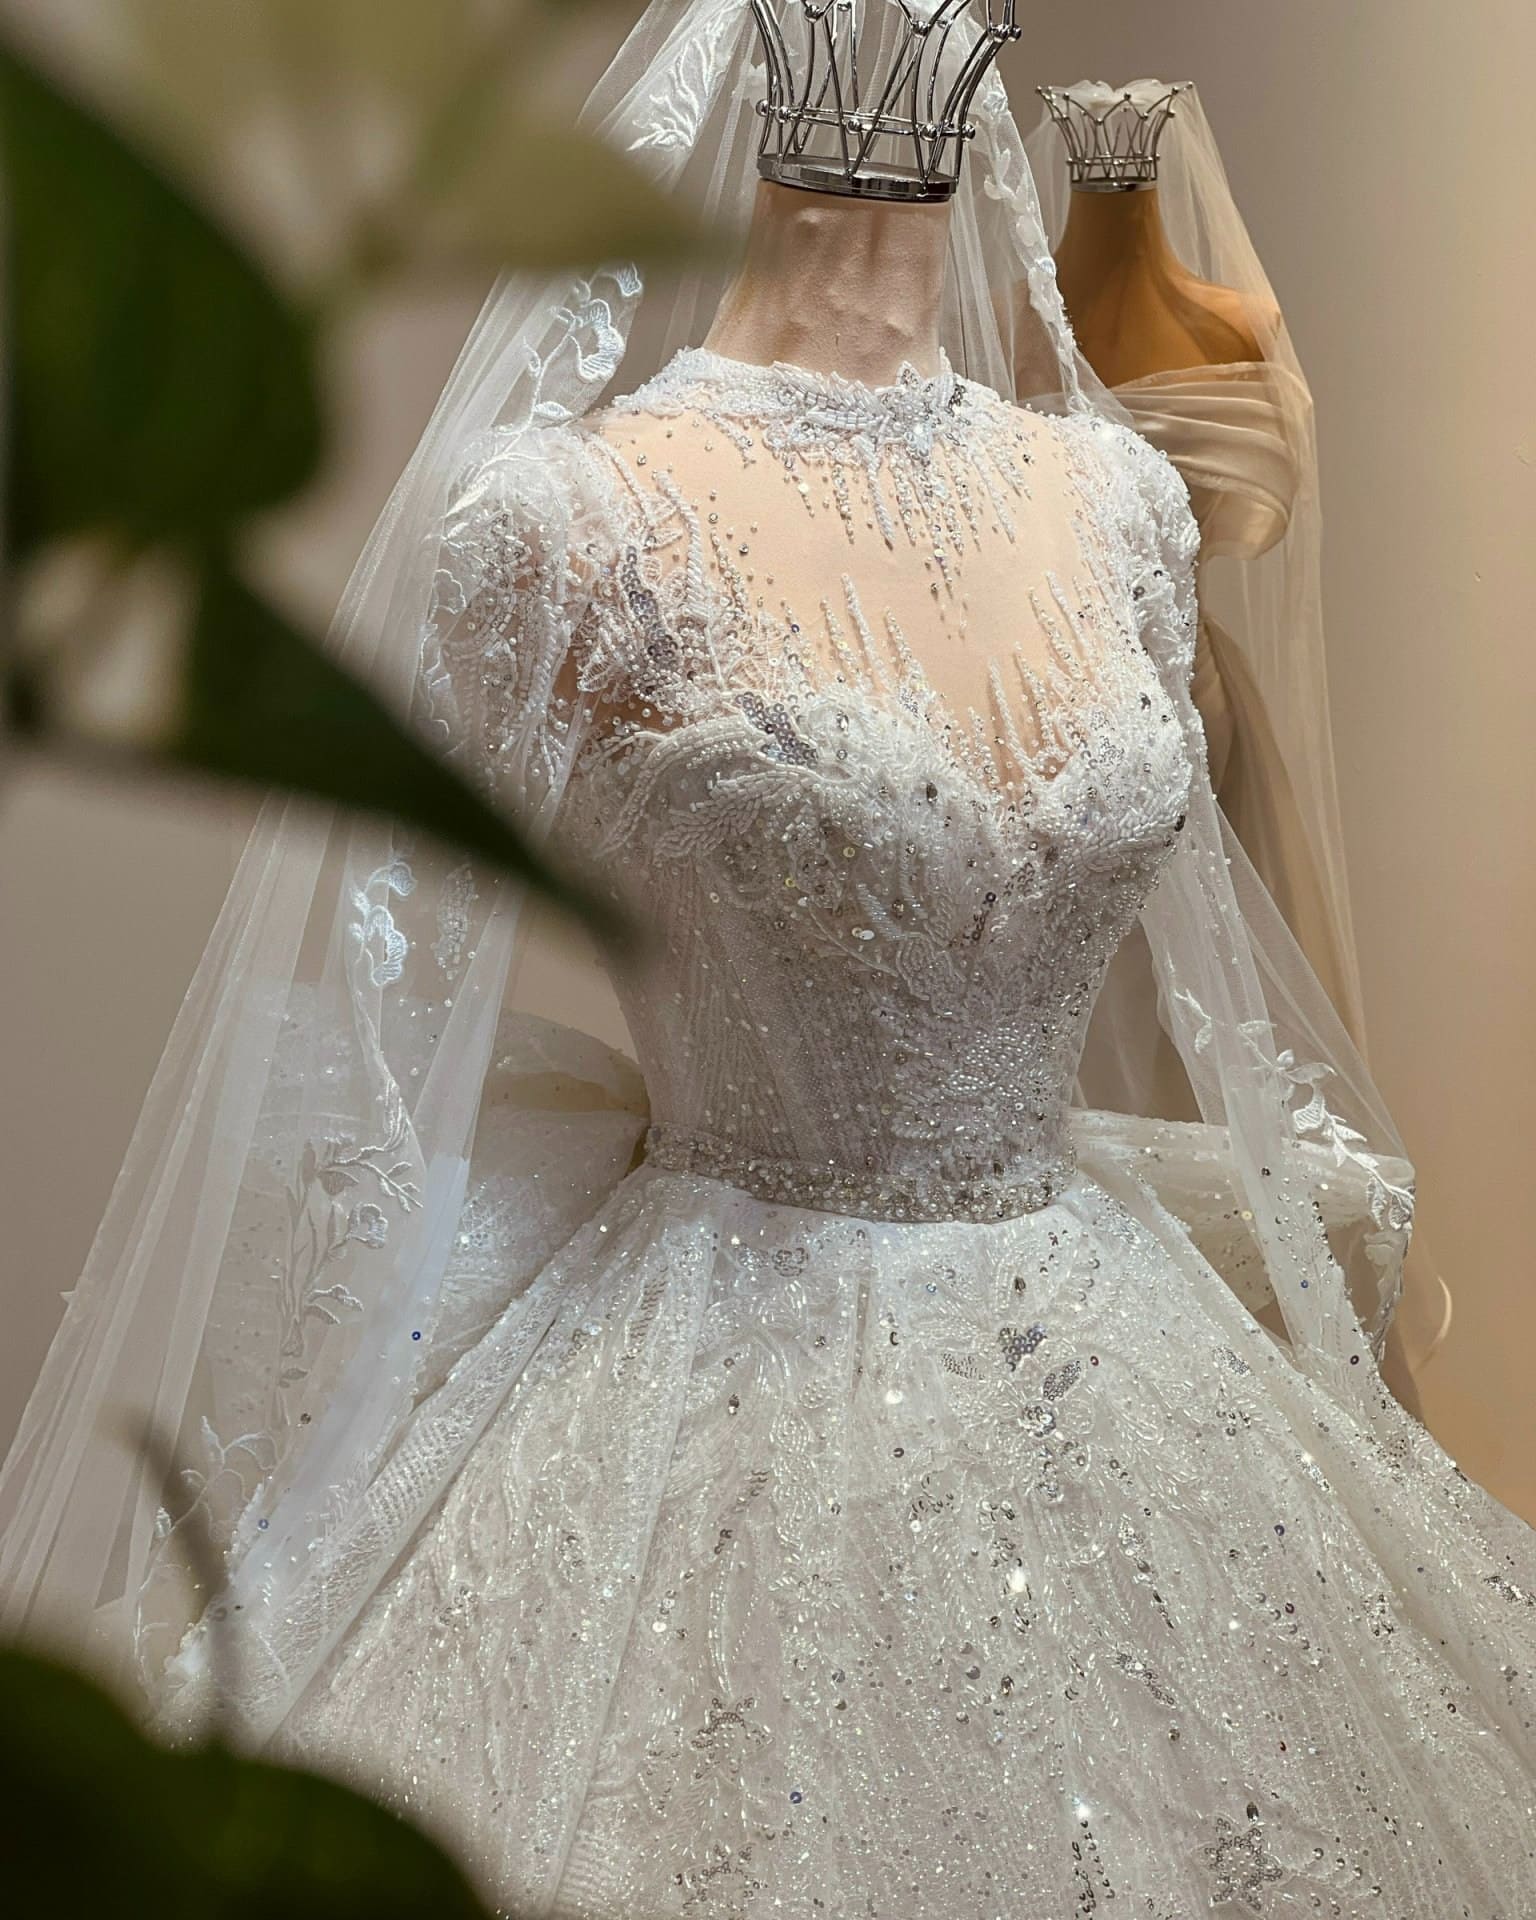 nga dinh bridal studio cho thuê váy cưới đẹp nhất ở quận 2